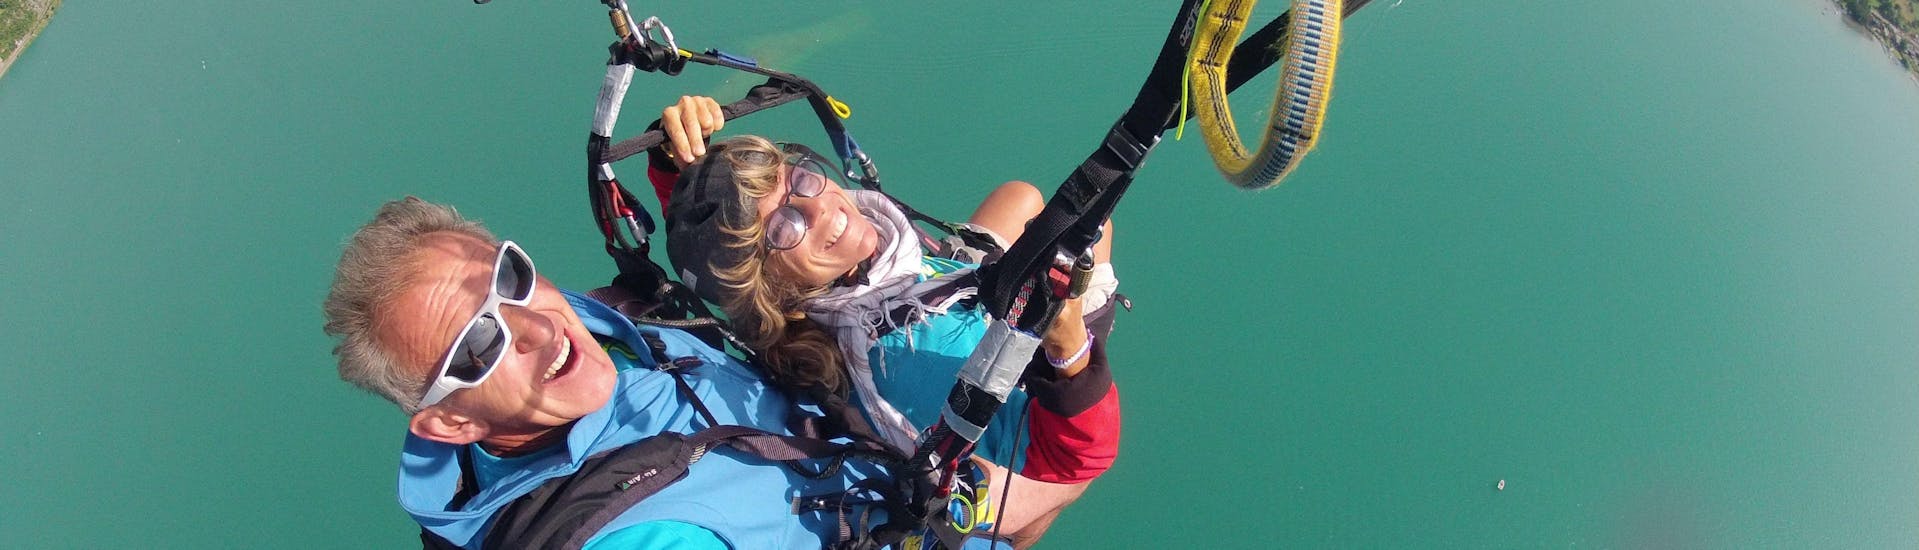 Une femme s'amuse pendant son activité de Parapente Biplace au Lac d'Annecy - Optimum avec FBI Parapente.